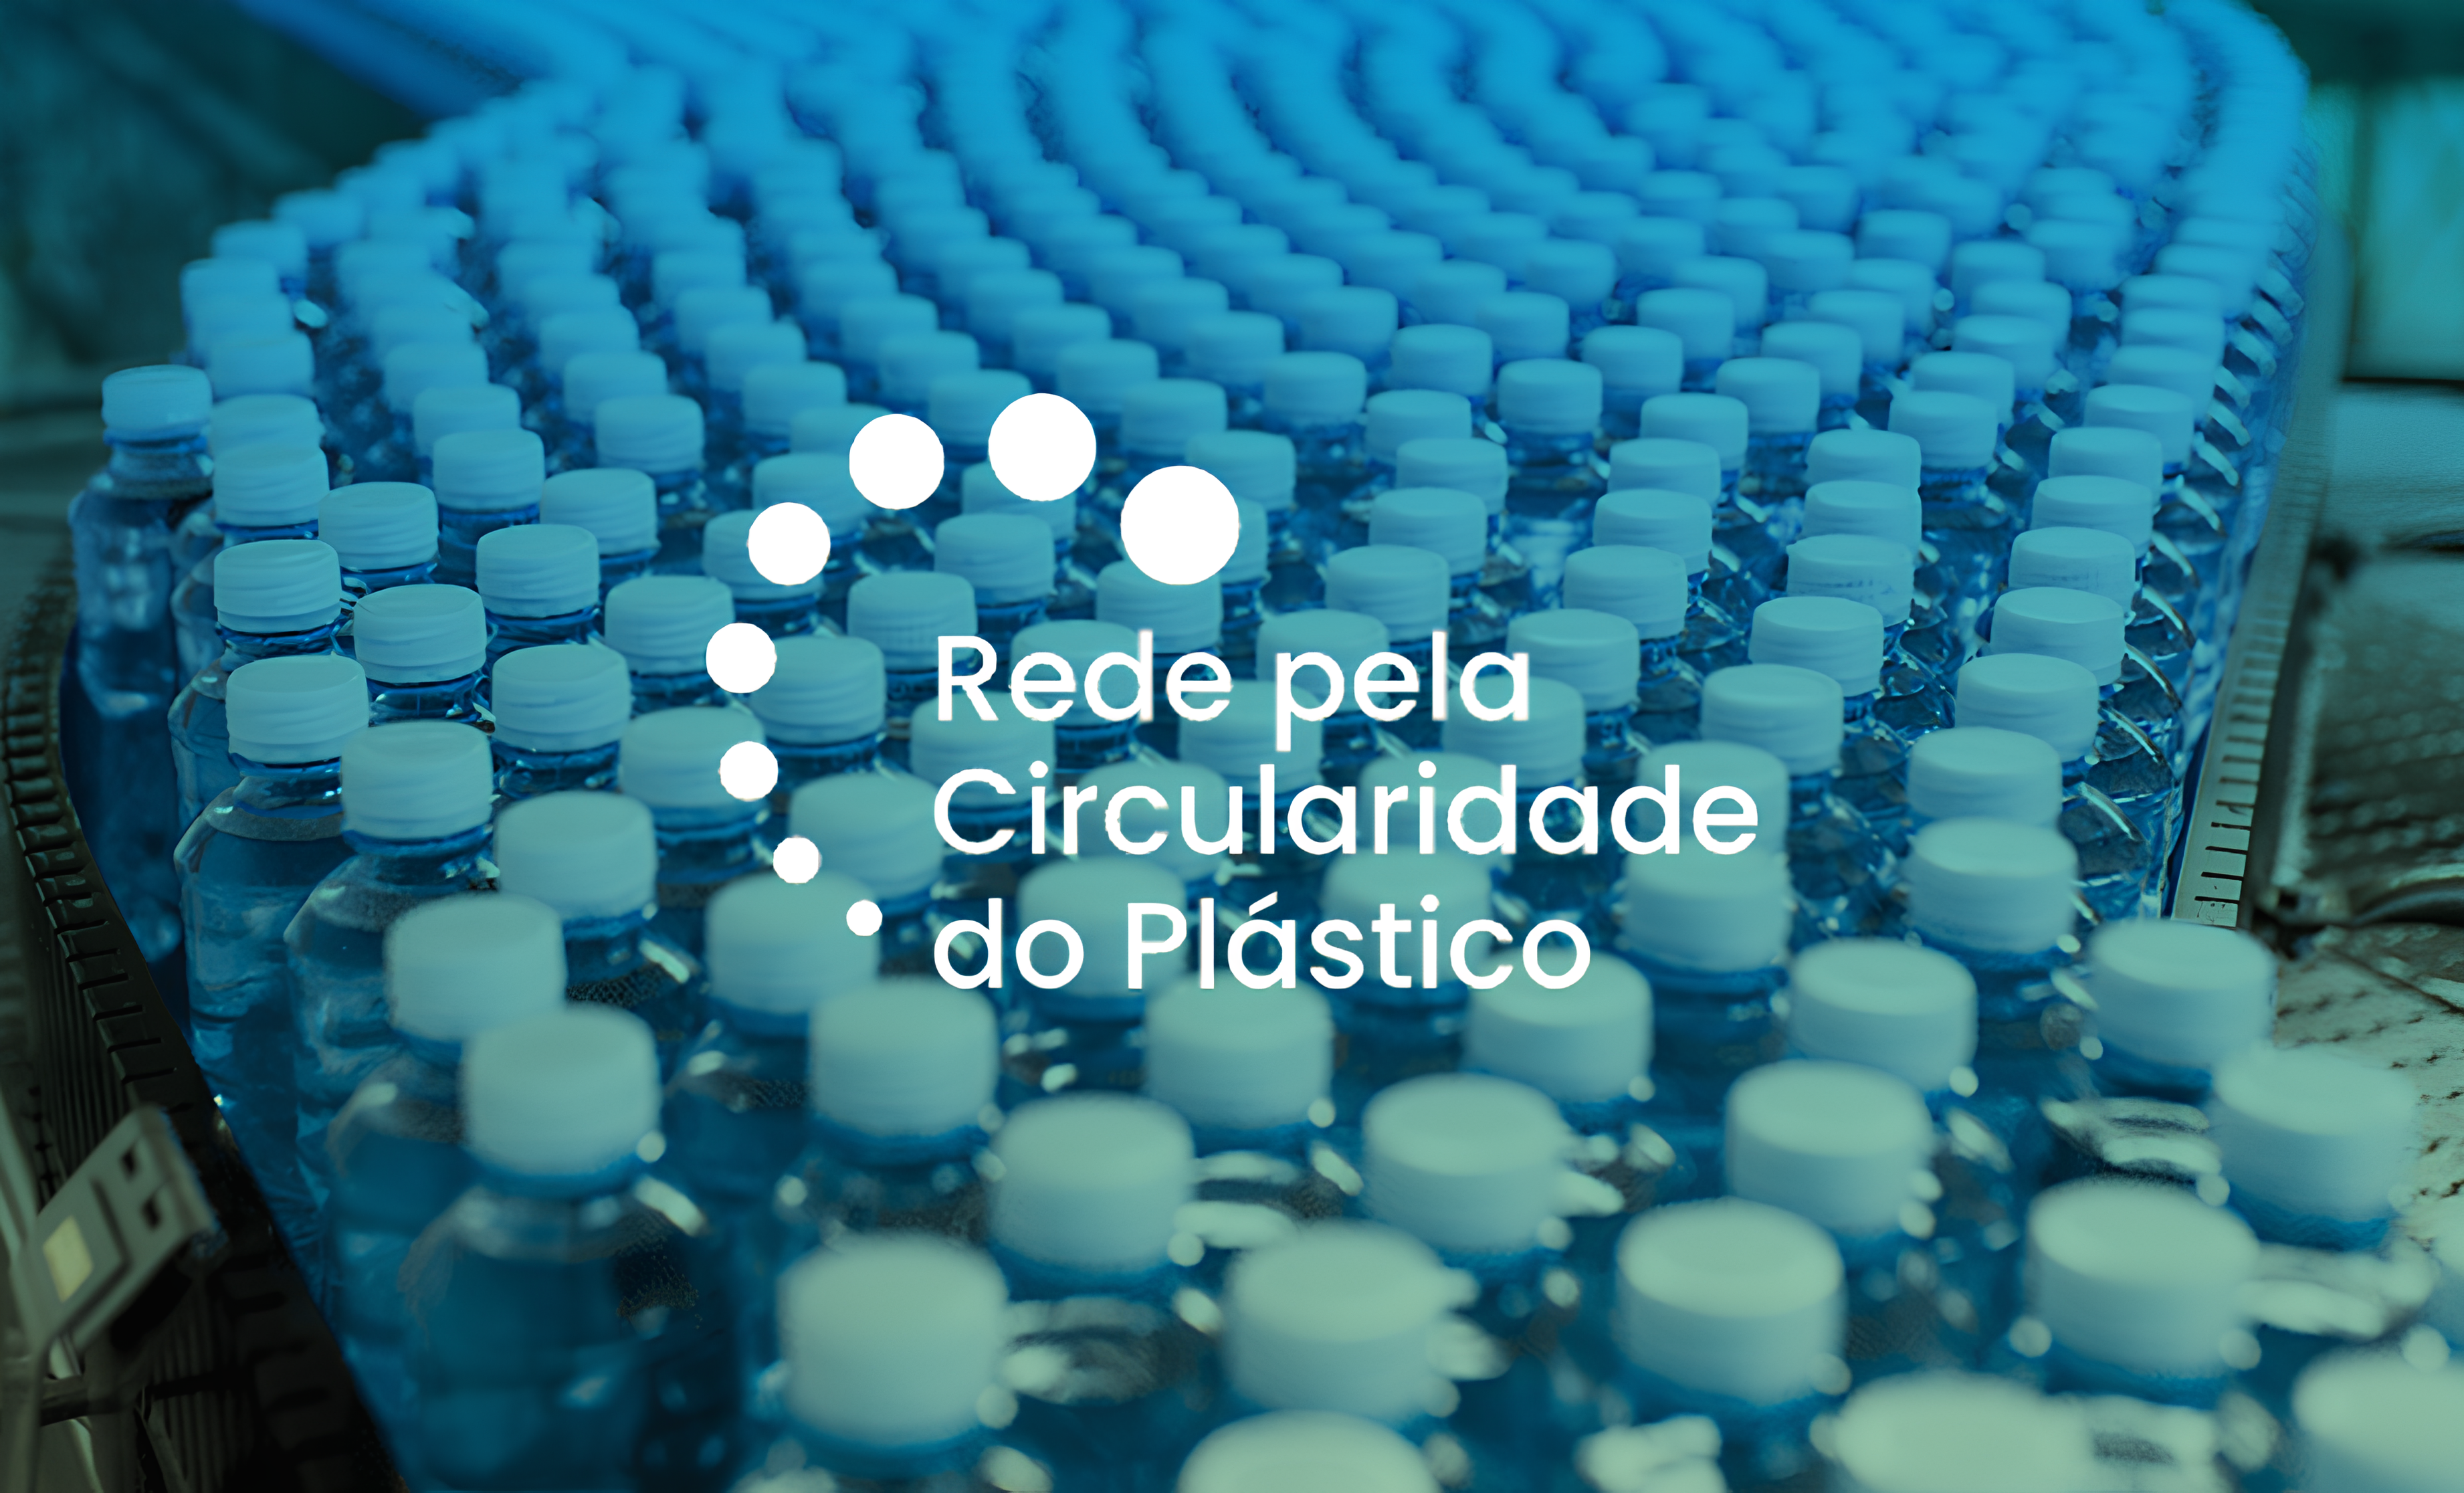 Criada em 2018, Rede pela Circularidade do Plástico comemora seu sexto aniversário de ações para economia circular.